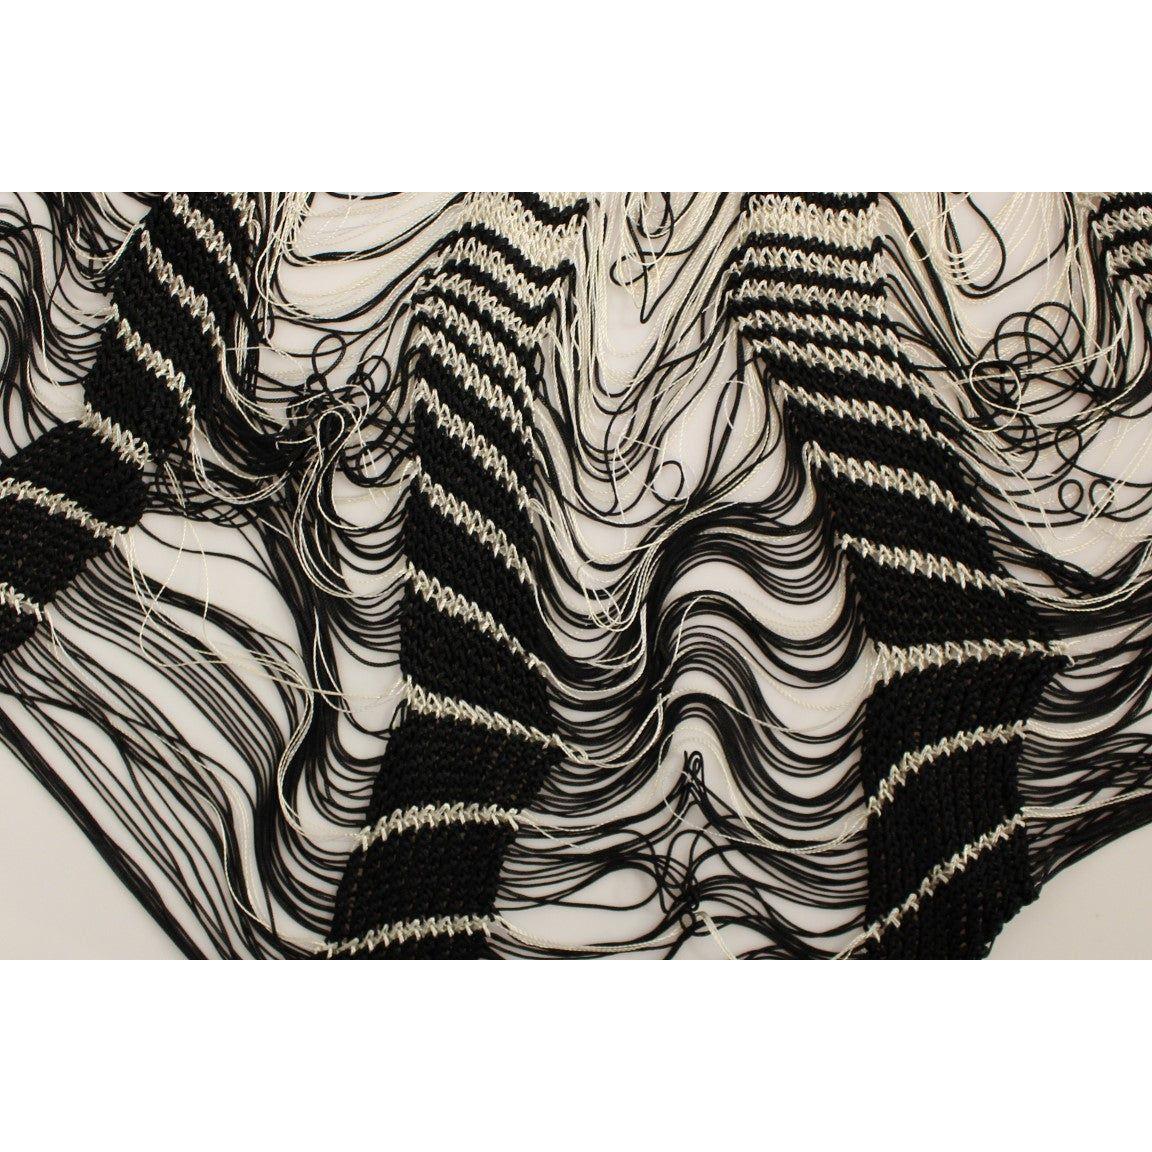 Alice Palmer Chic Black & White Knitted Skirt white-black-knitted-assymetrical-skirt